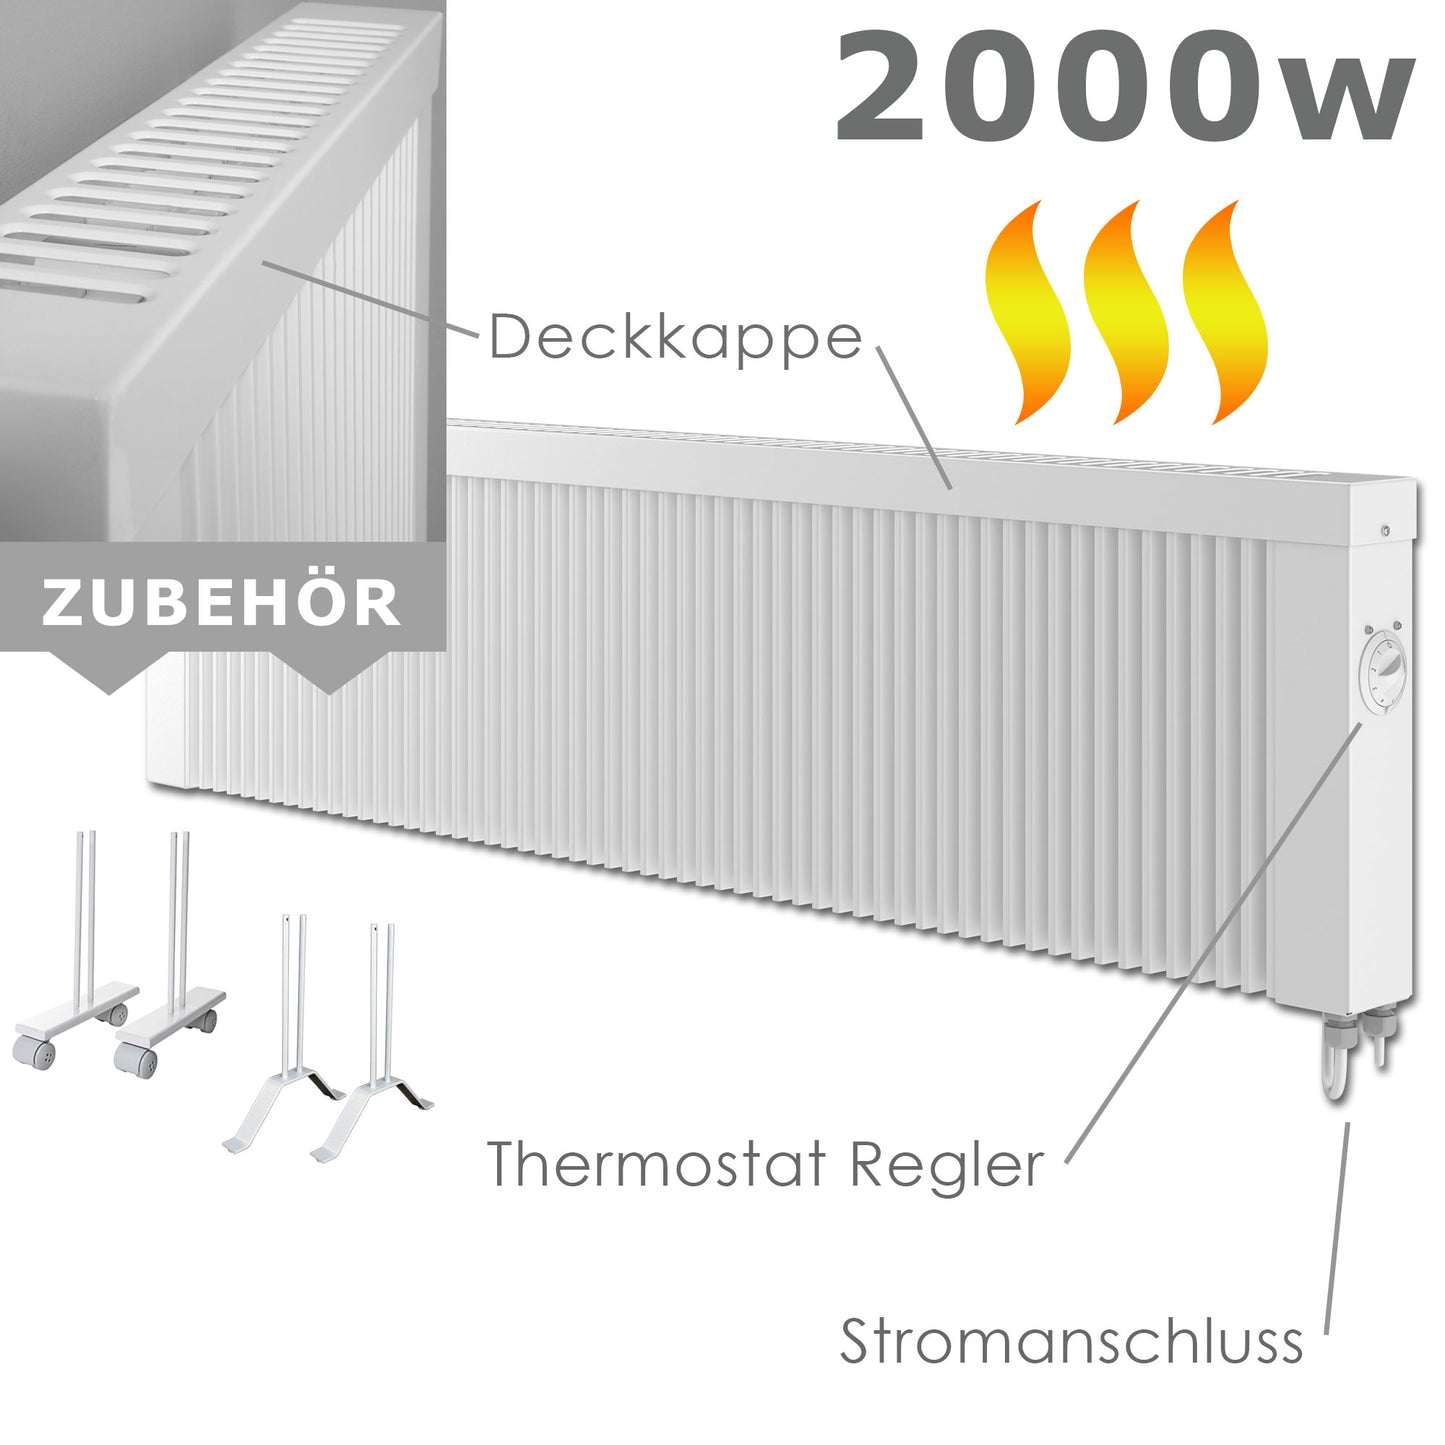 2000 Watt elektrische Vollspeicher-Heizung mit Thermostat, für Räume von ca. 18 bis 23 qm